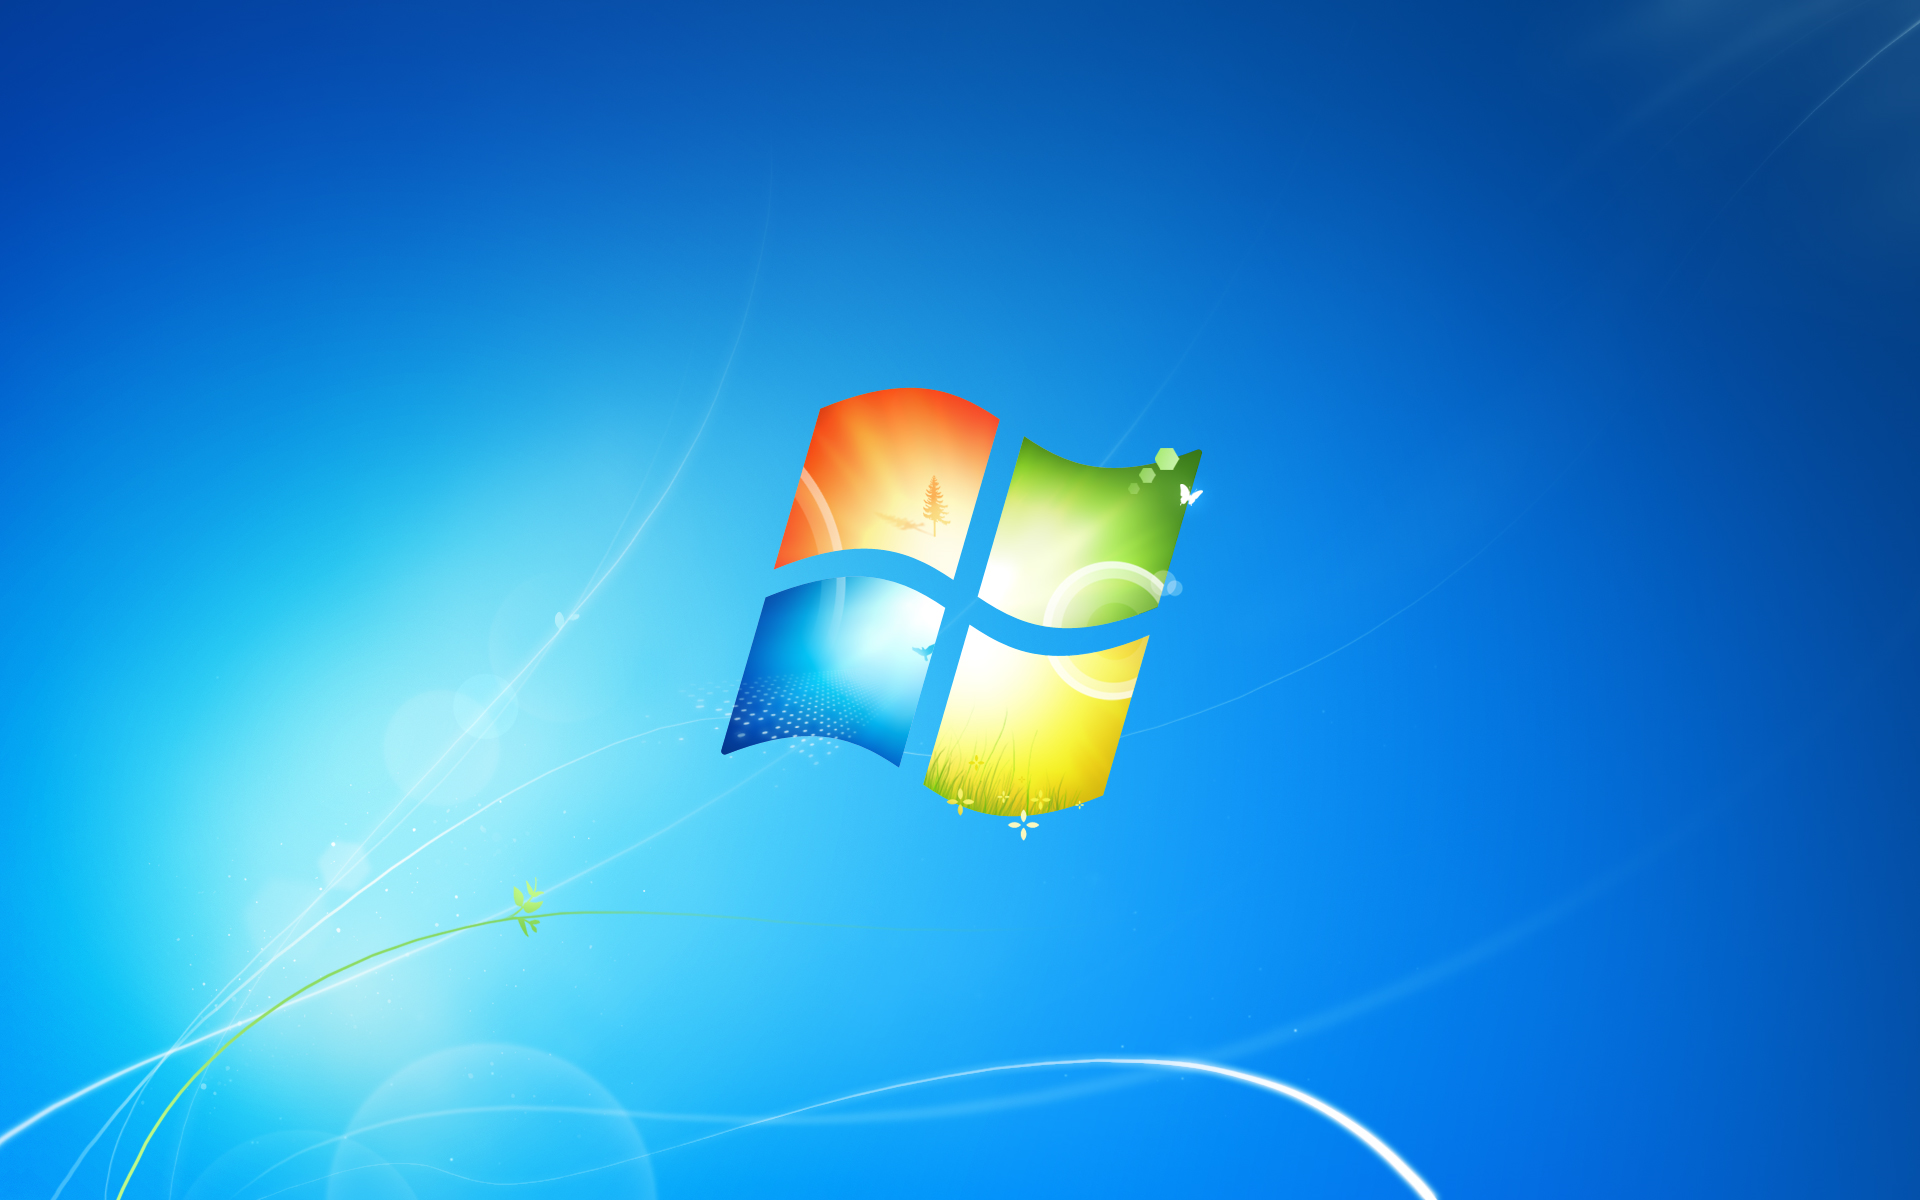 Điều gì làm cho hình nền mới của Windows 7 trông tuyệt vời đến vậy? Tốc độ cao, thiết kế trực quan và rất nhiều tùy chọn để bạn có thể tải về và sử dụng ngay lập tức. Chọn hình nền hoặc logo mặc định mới cho hệ điều hành của mình ngay bây giờ!